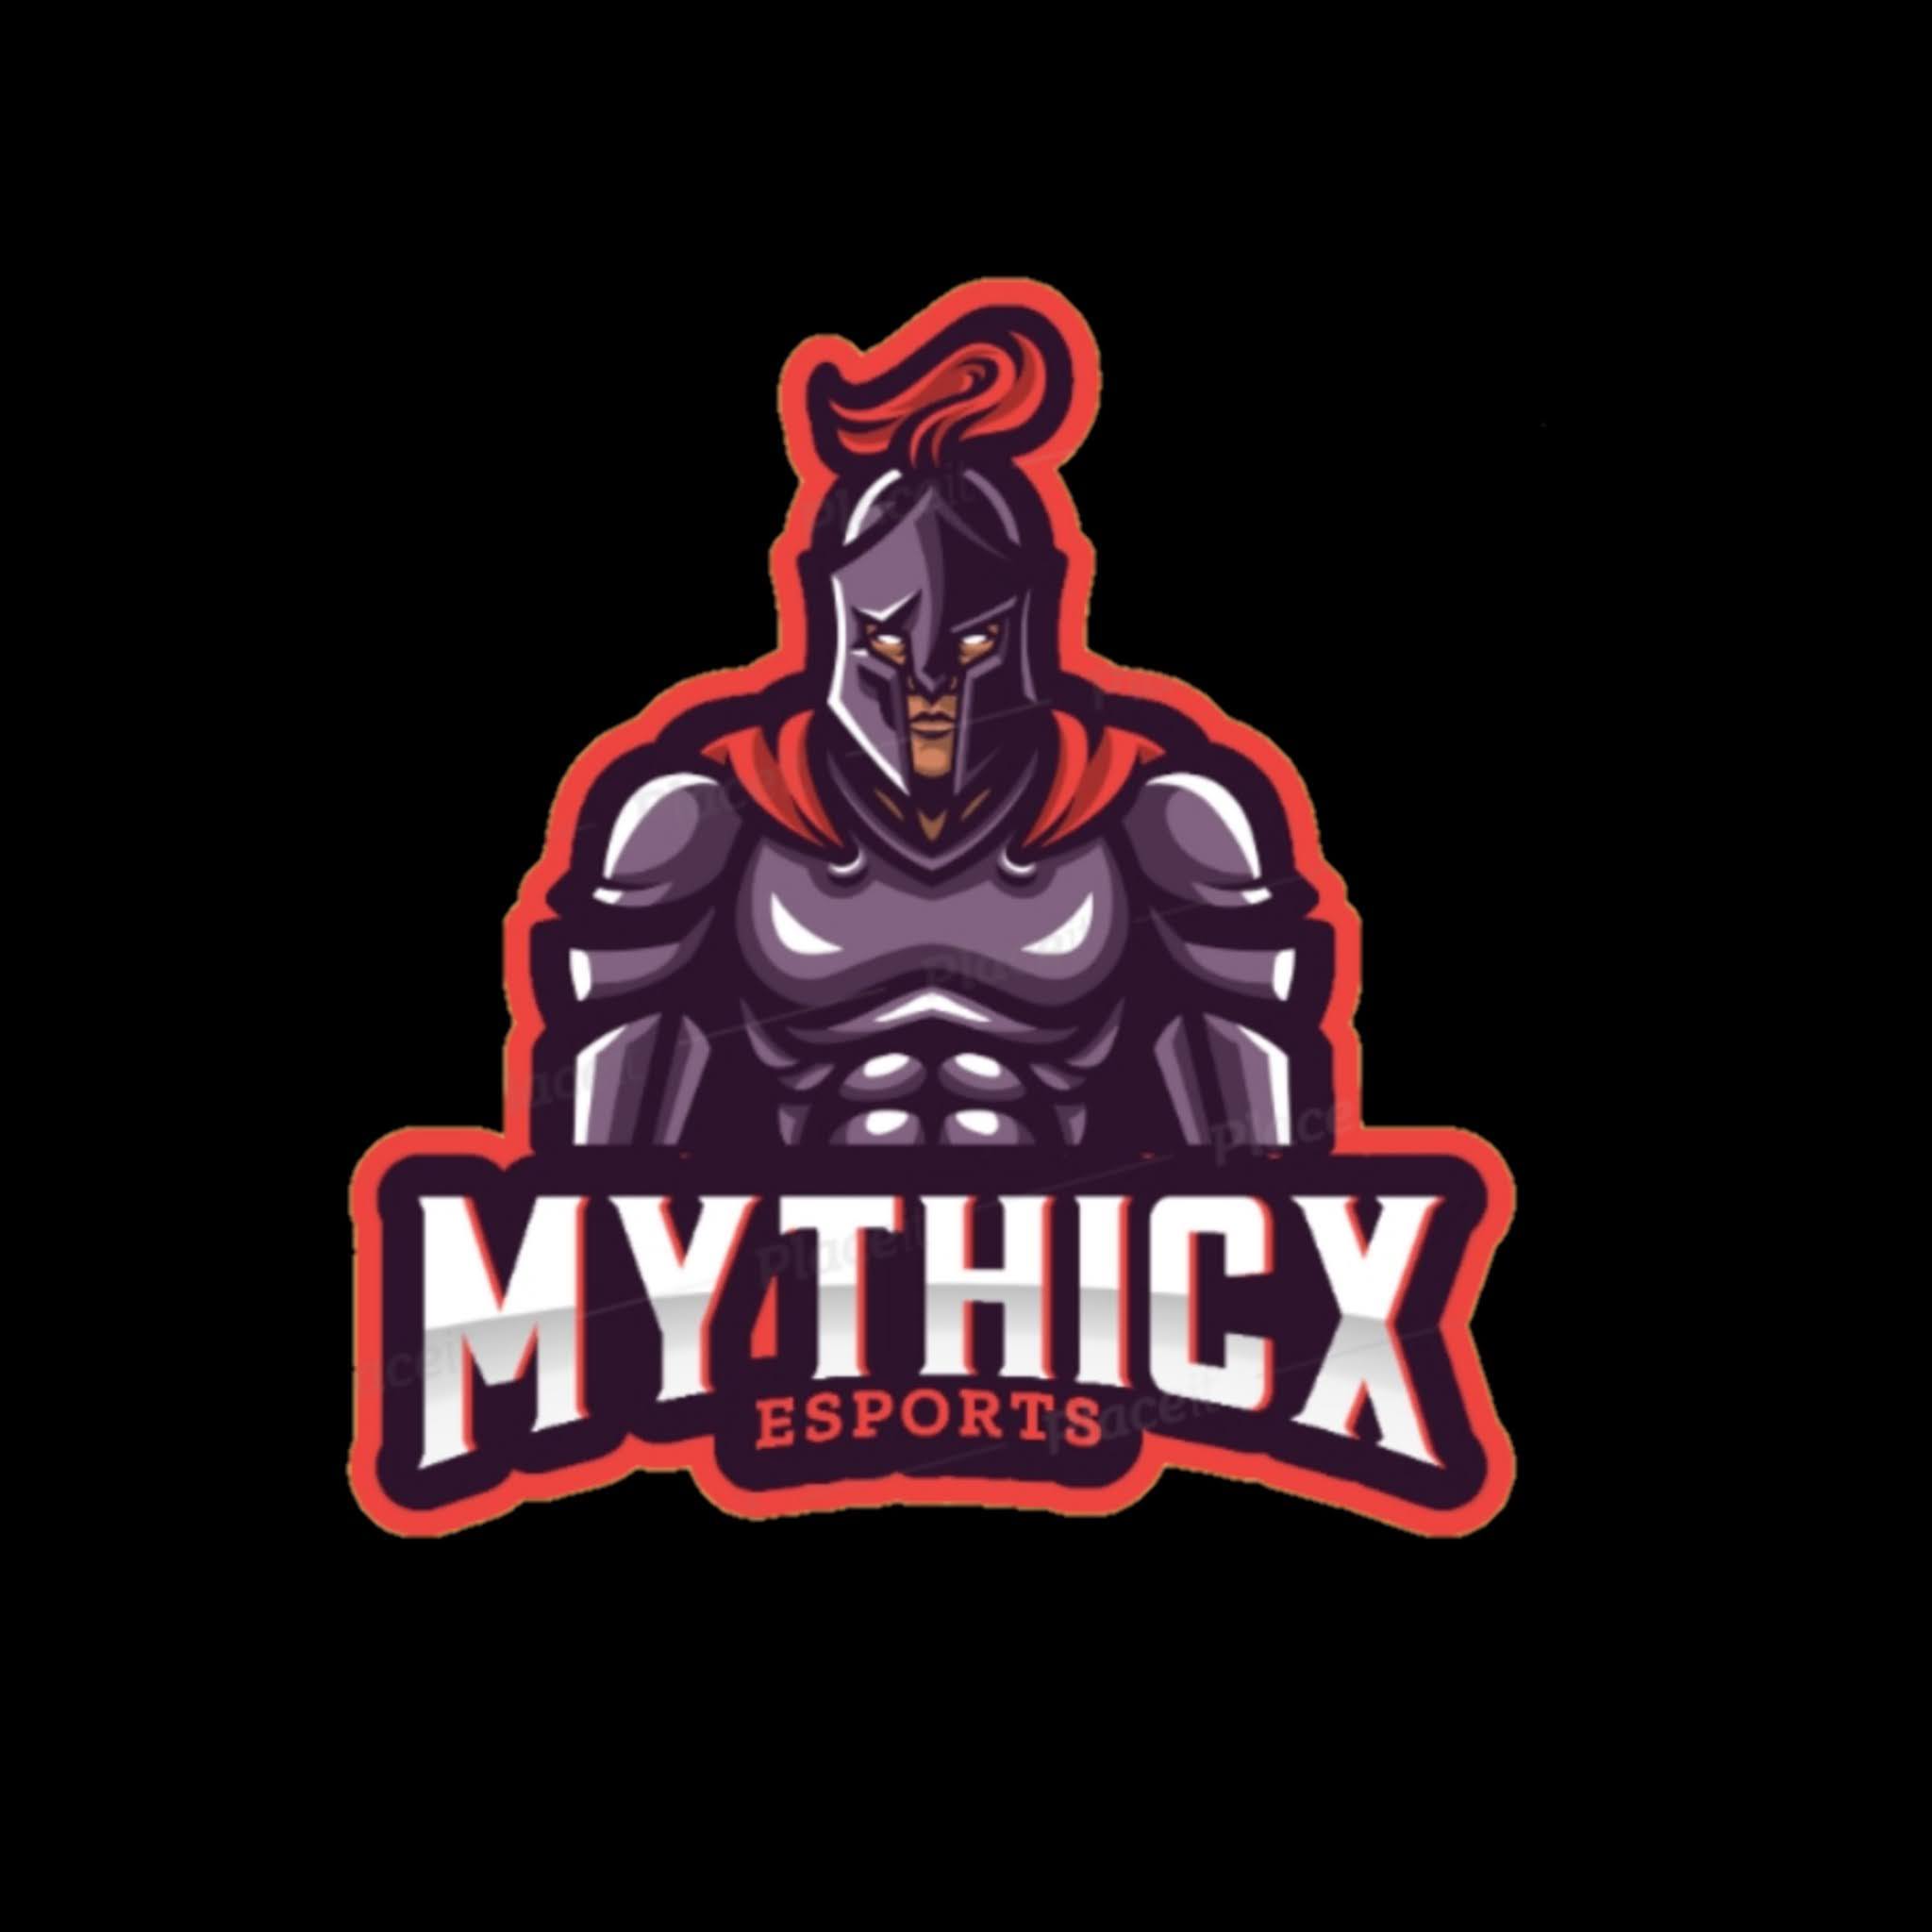 MYTHICX ESPORTS